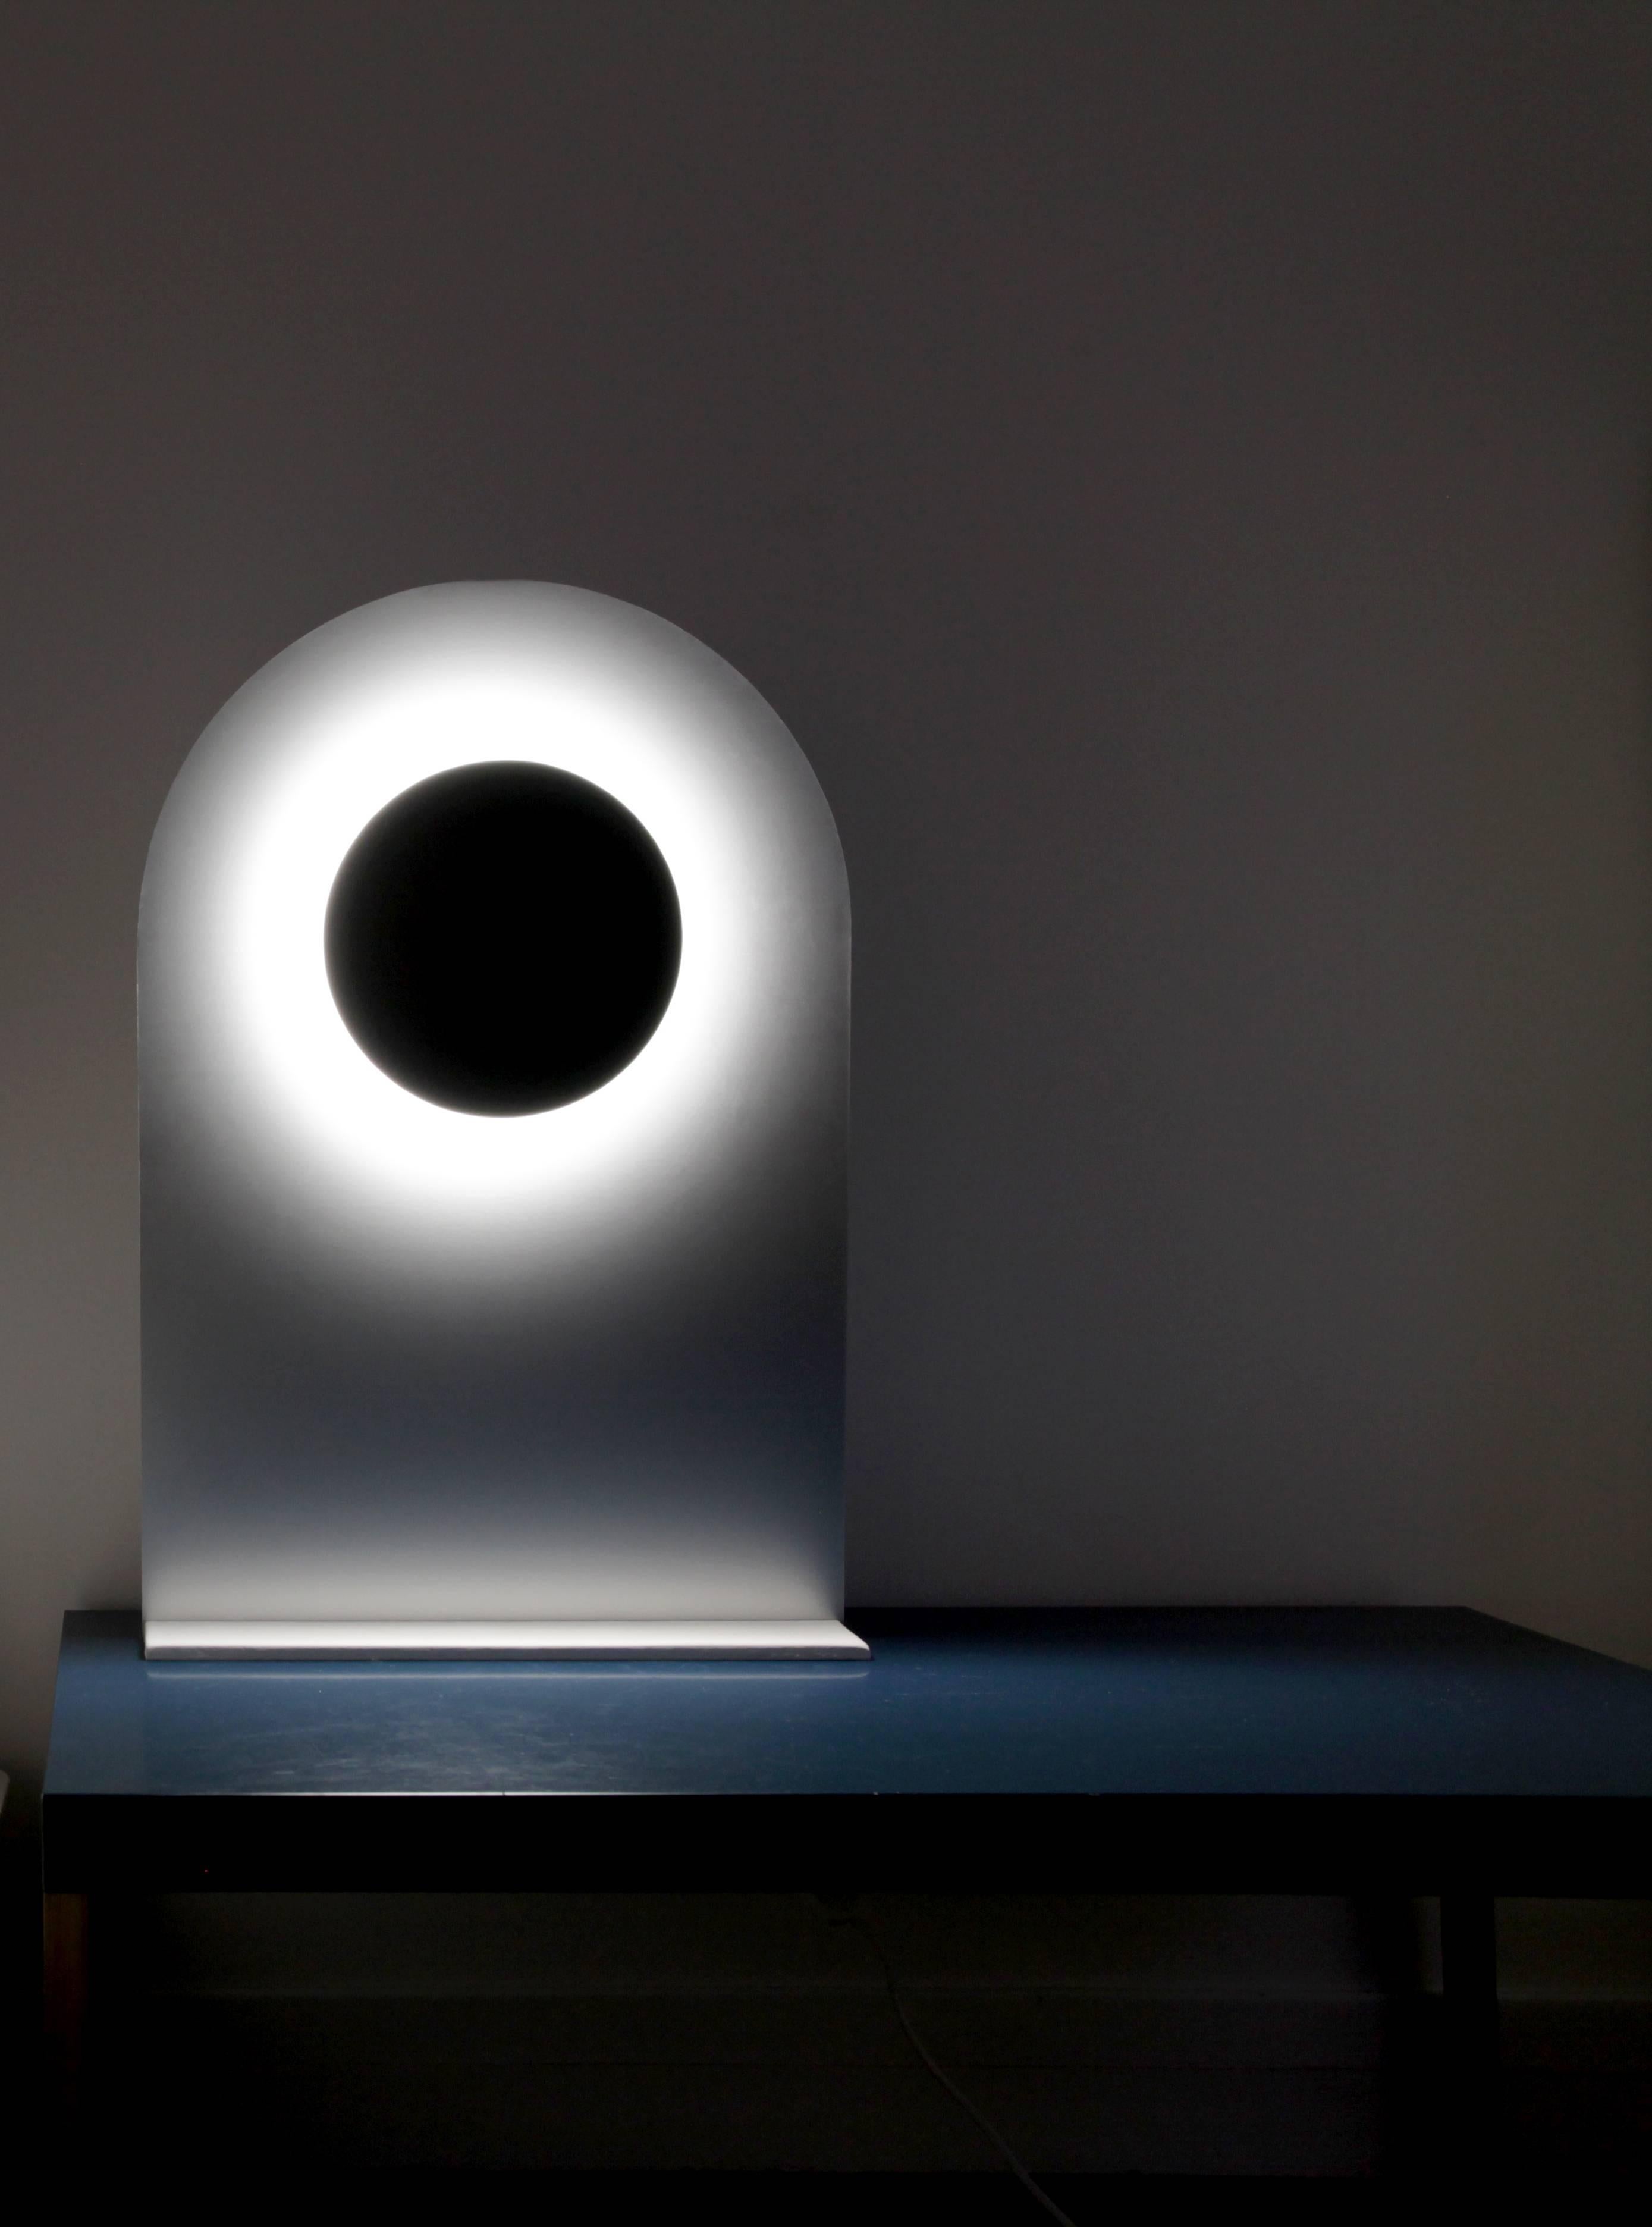 Lampe de table Eclipse par Arturo Erbsman
Dessin artisanal d'Arturo Erbsman
Édition limitée, signée et numérotée
Dimensions : 60 x 39 x 12 cm : 60 x 39 x 12 cm
MATERIAL : disque en aluminium anodisé, miroir, spot LED, bois, base en pierre